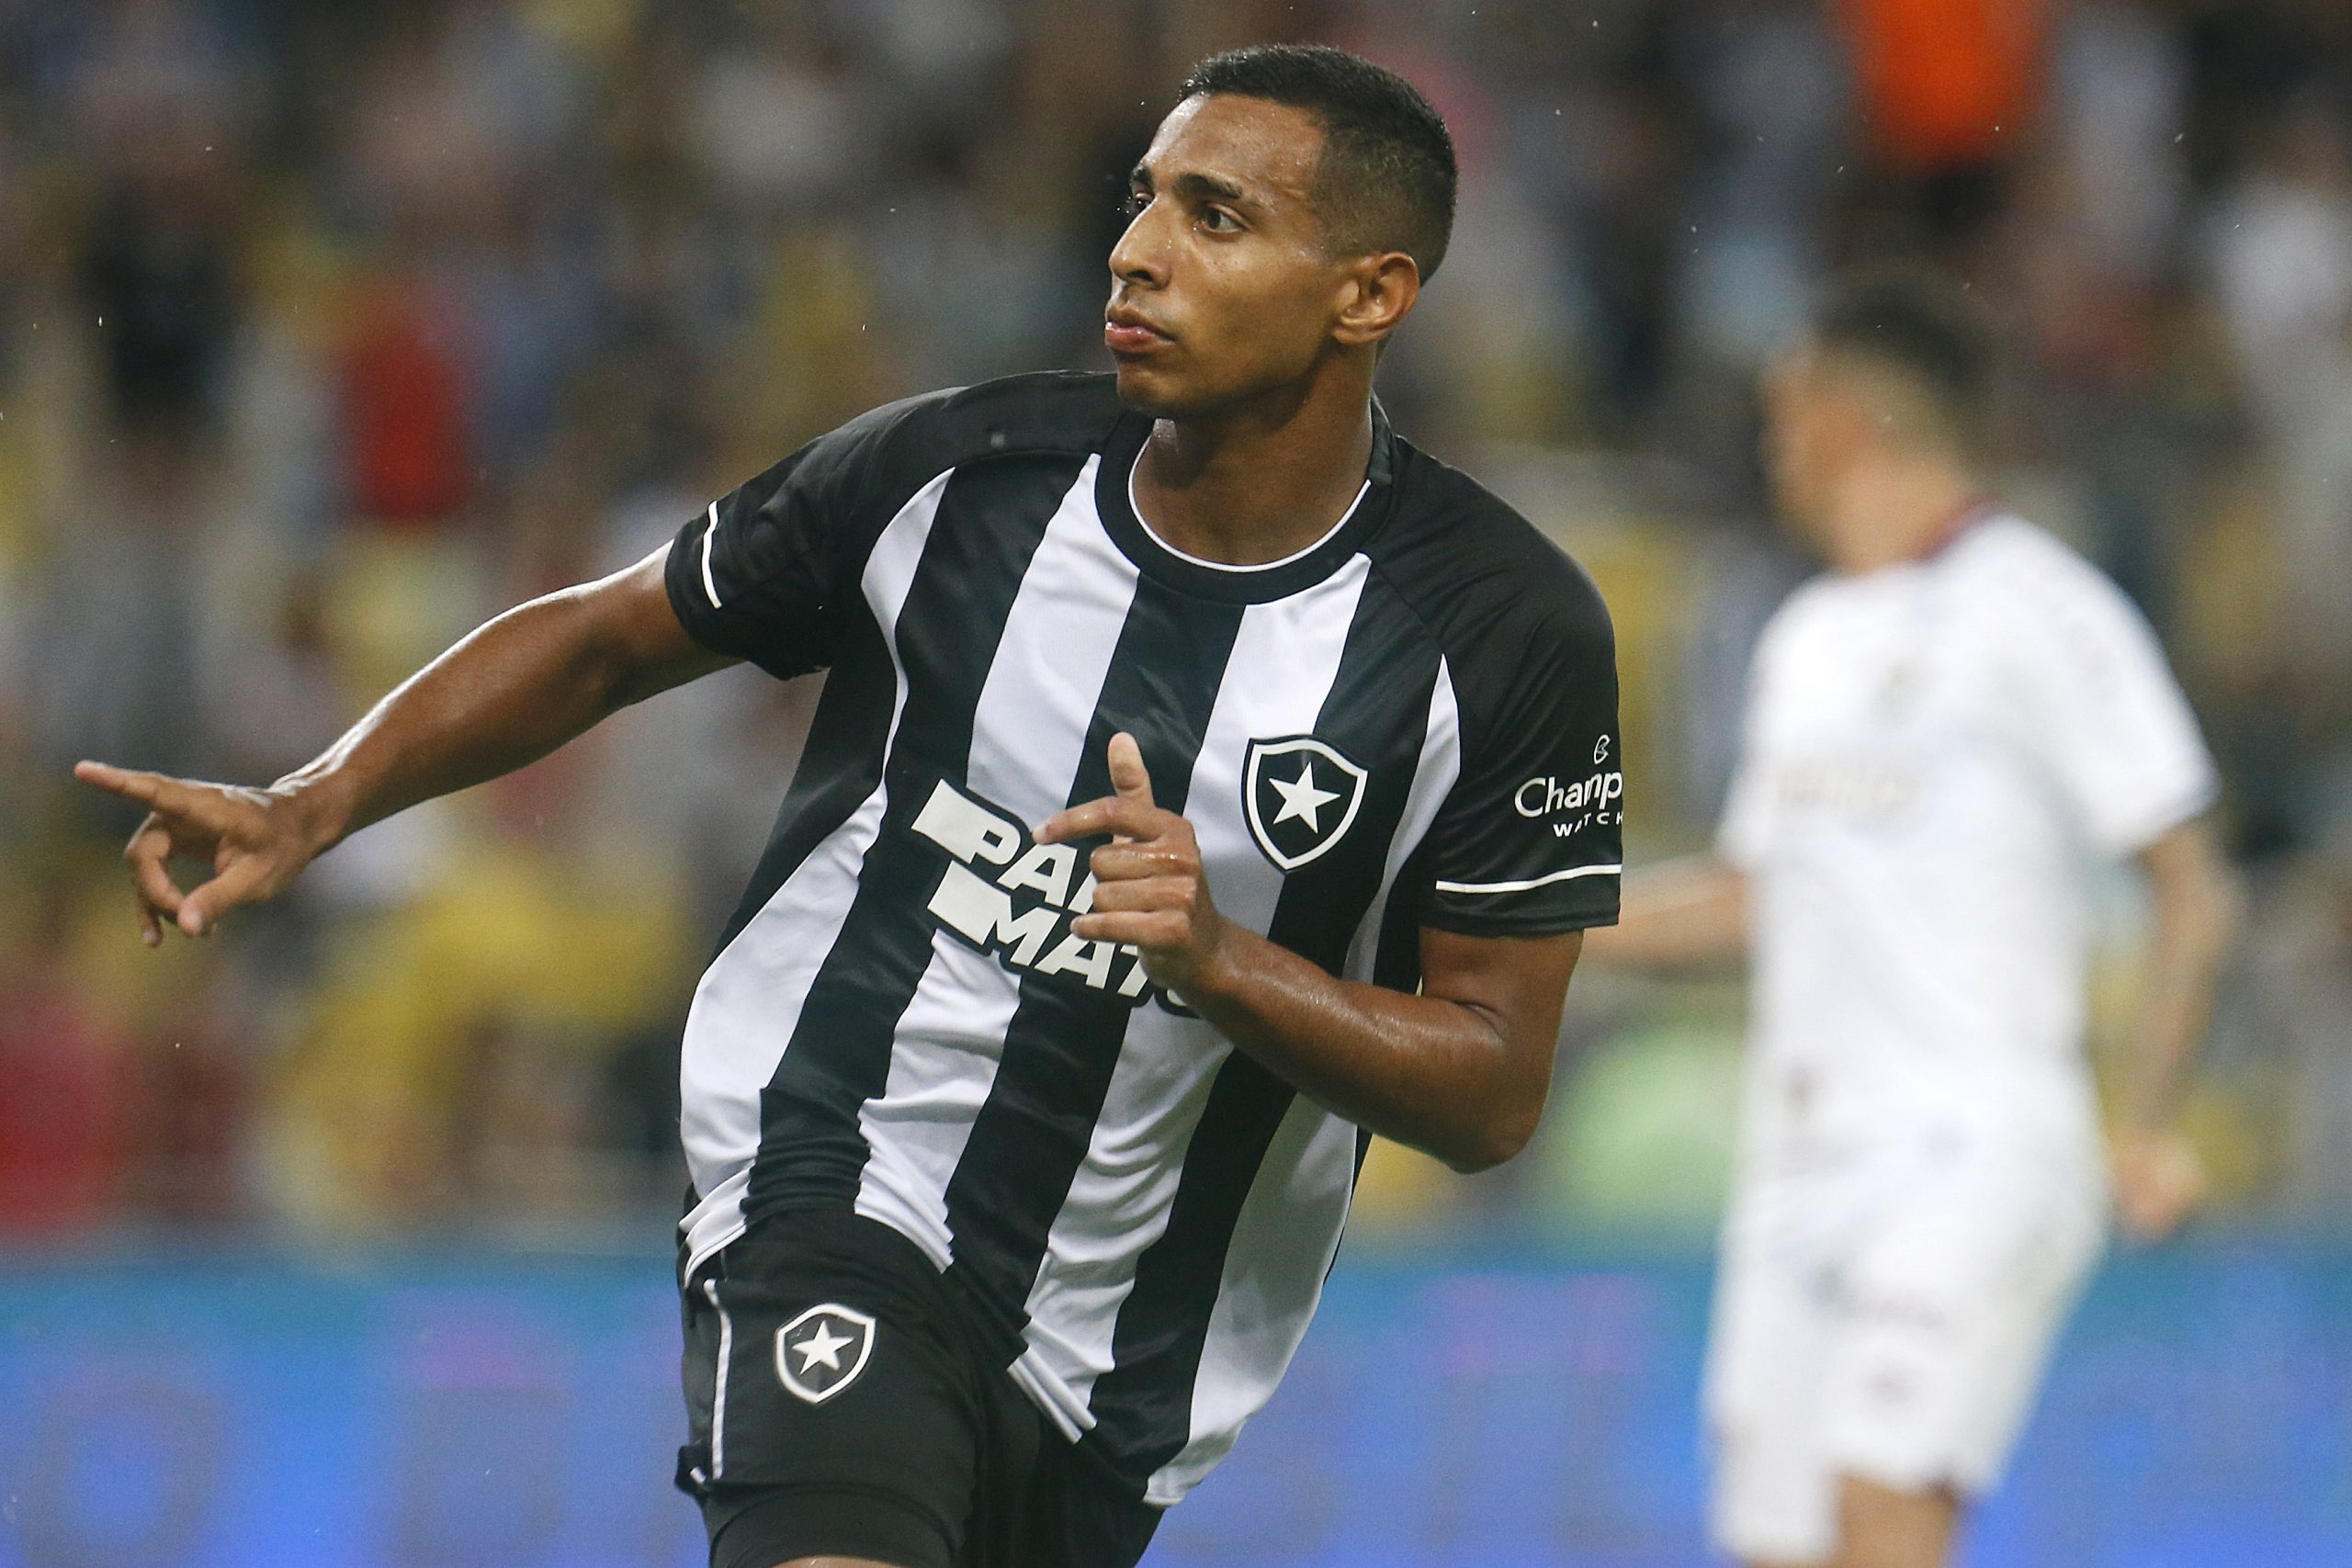 Com proposta do futebol russo, Victor Sá pode deixar o Botafogo